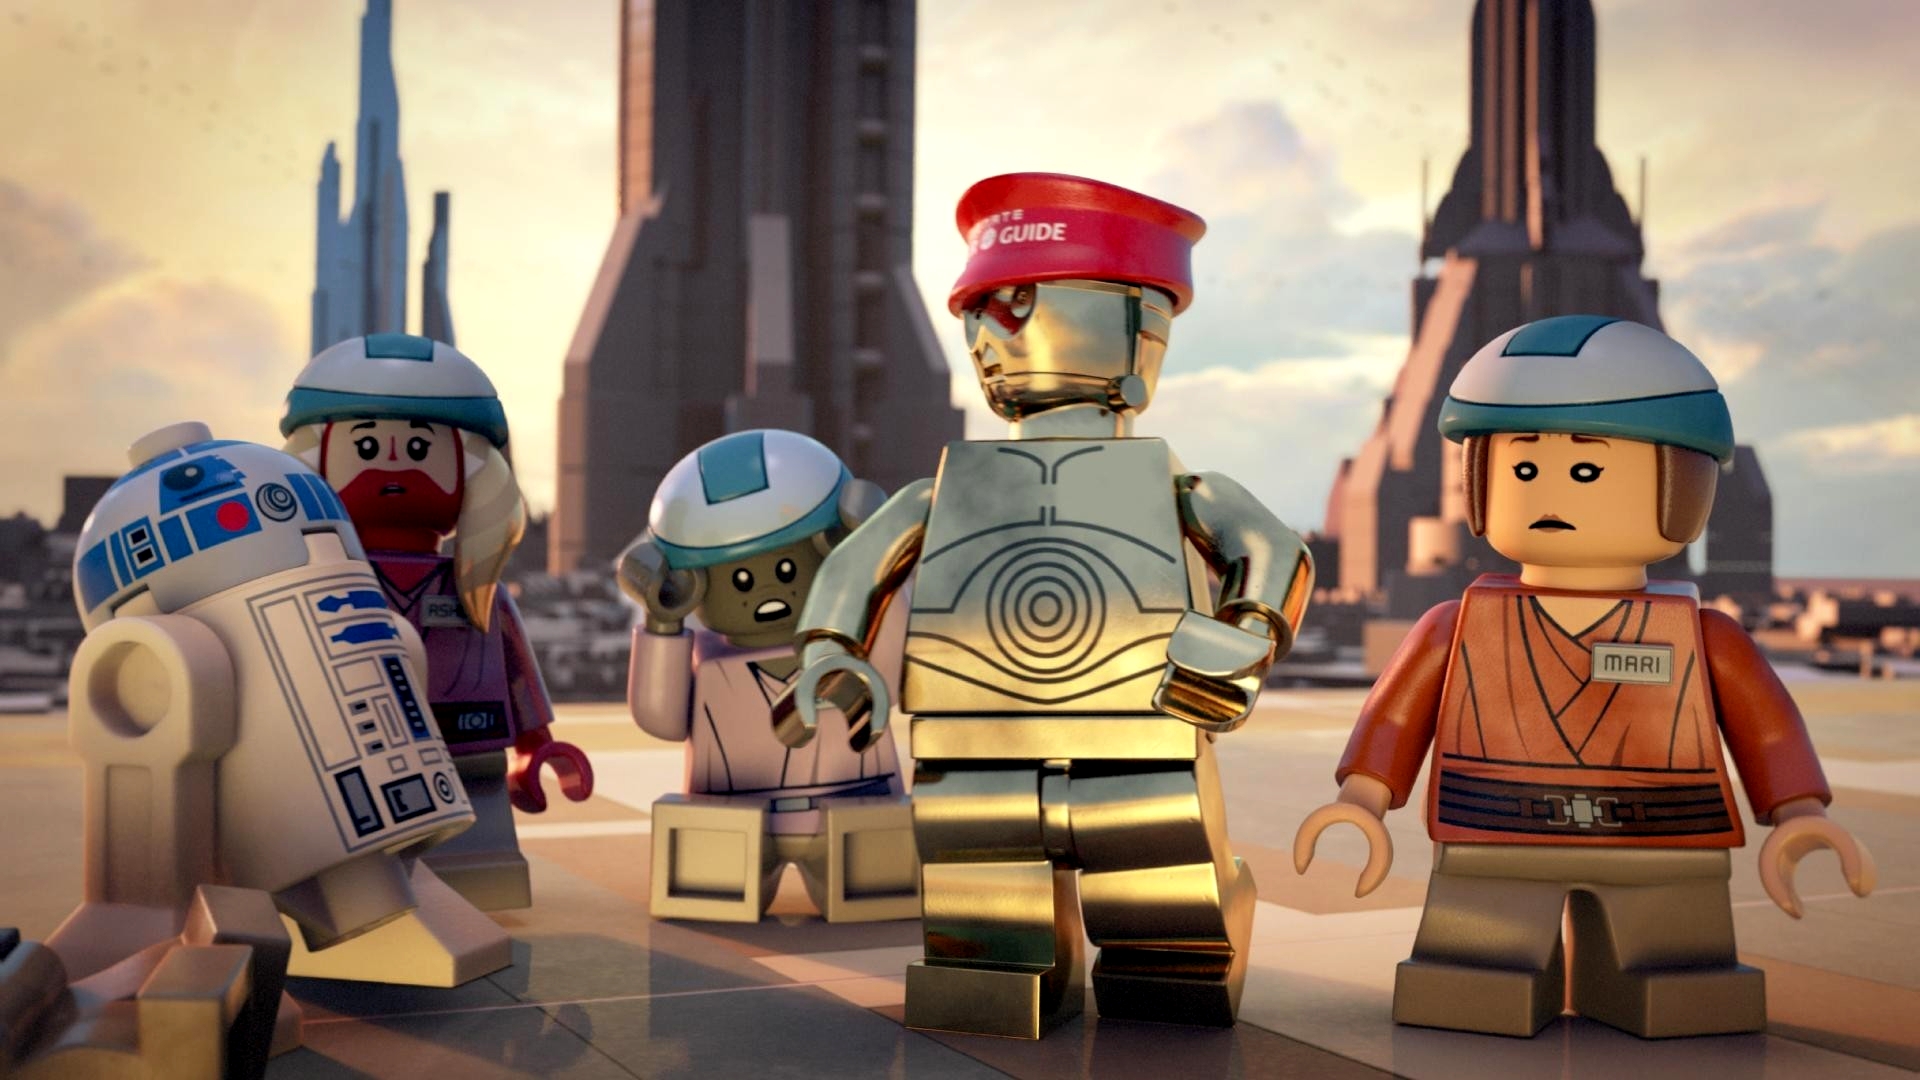 8k Lego Star Wars: The Padawan Menace Images